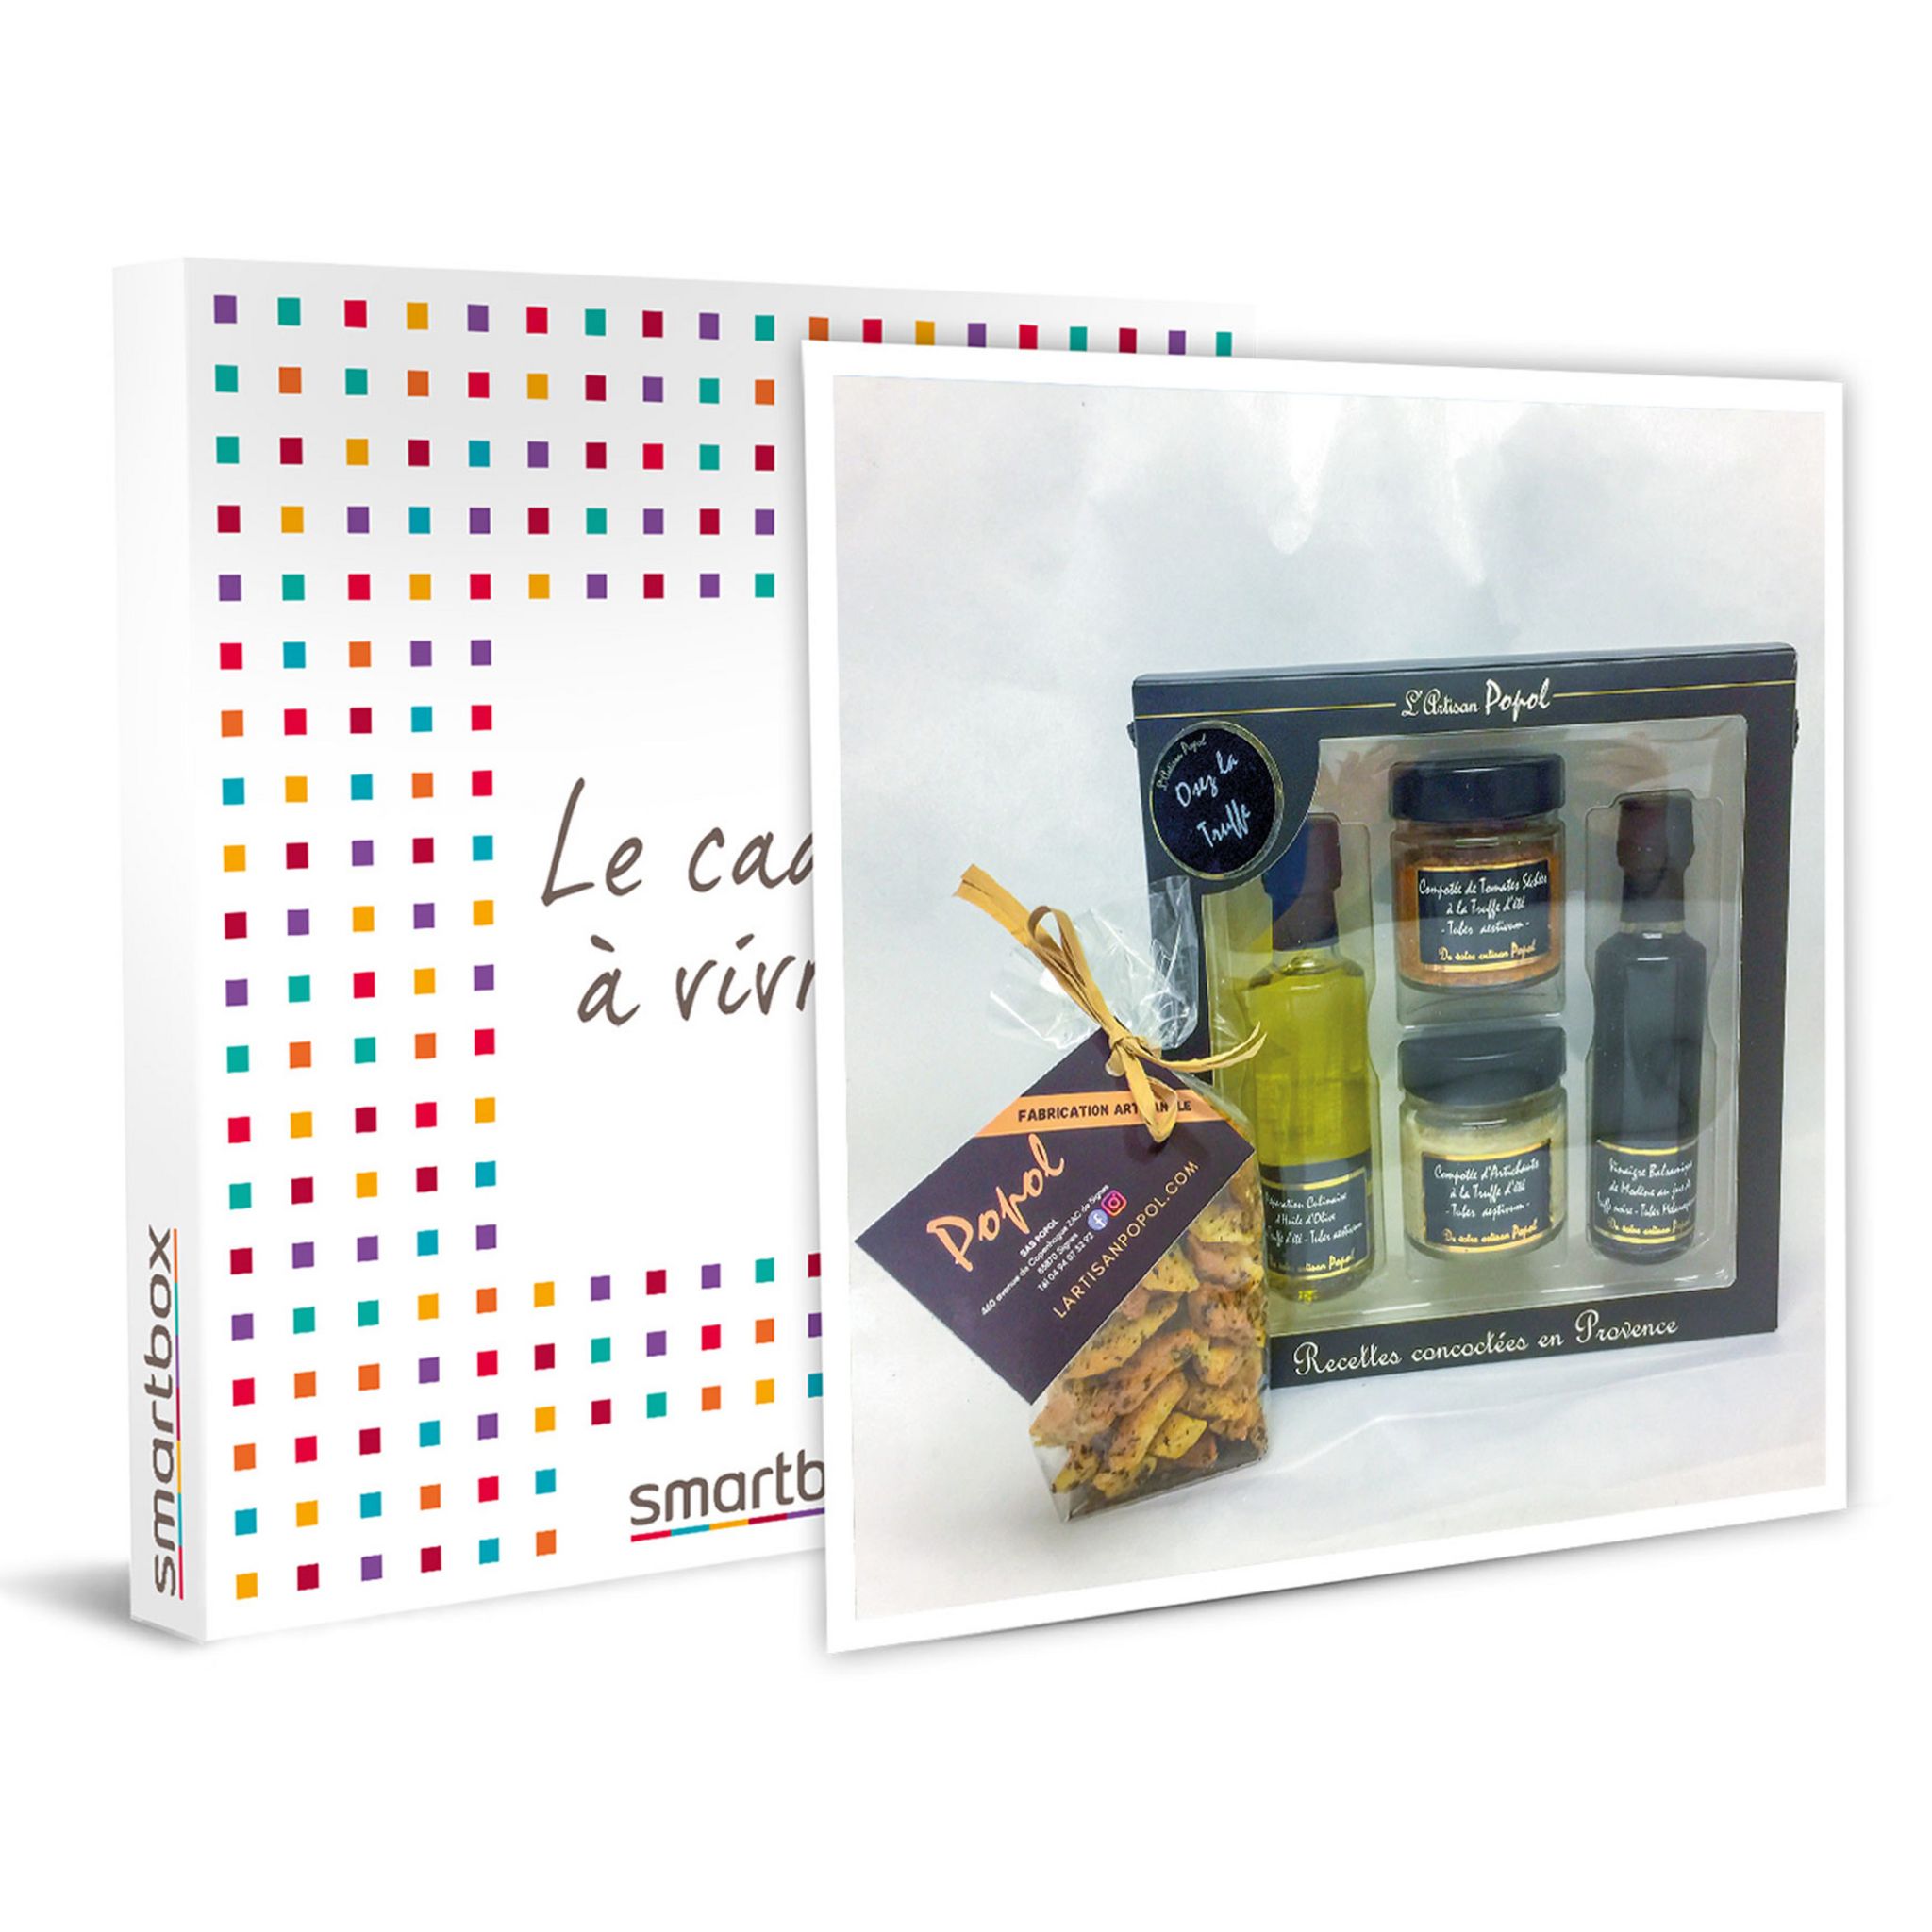 Smartbox Coffret Cadeau - Panier gourmand de spécialités à la